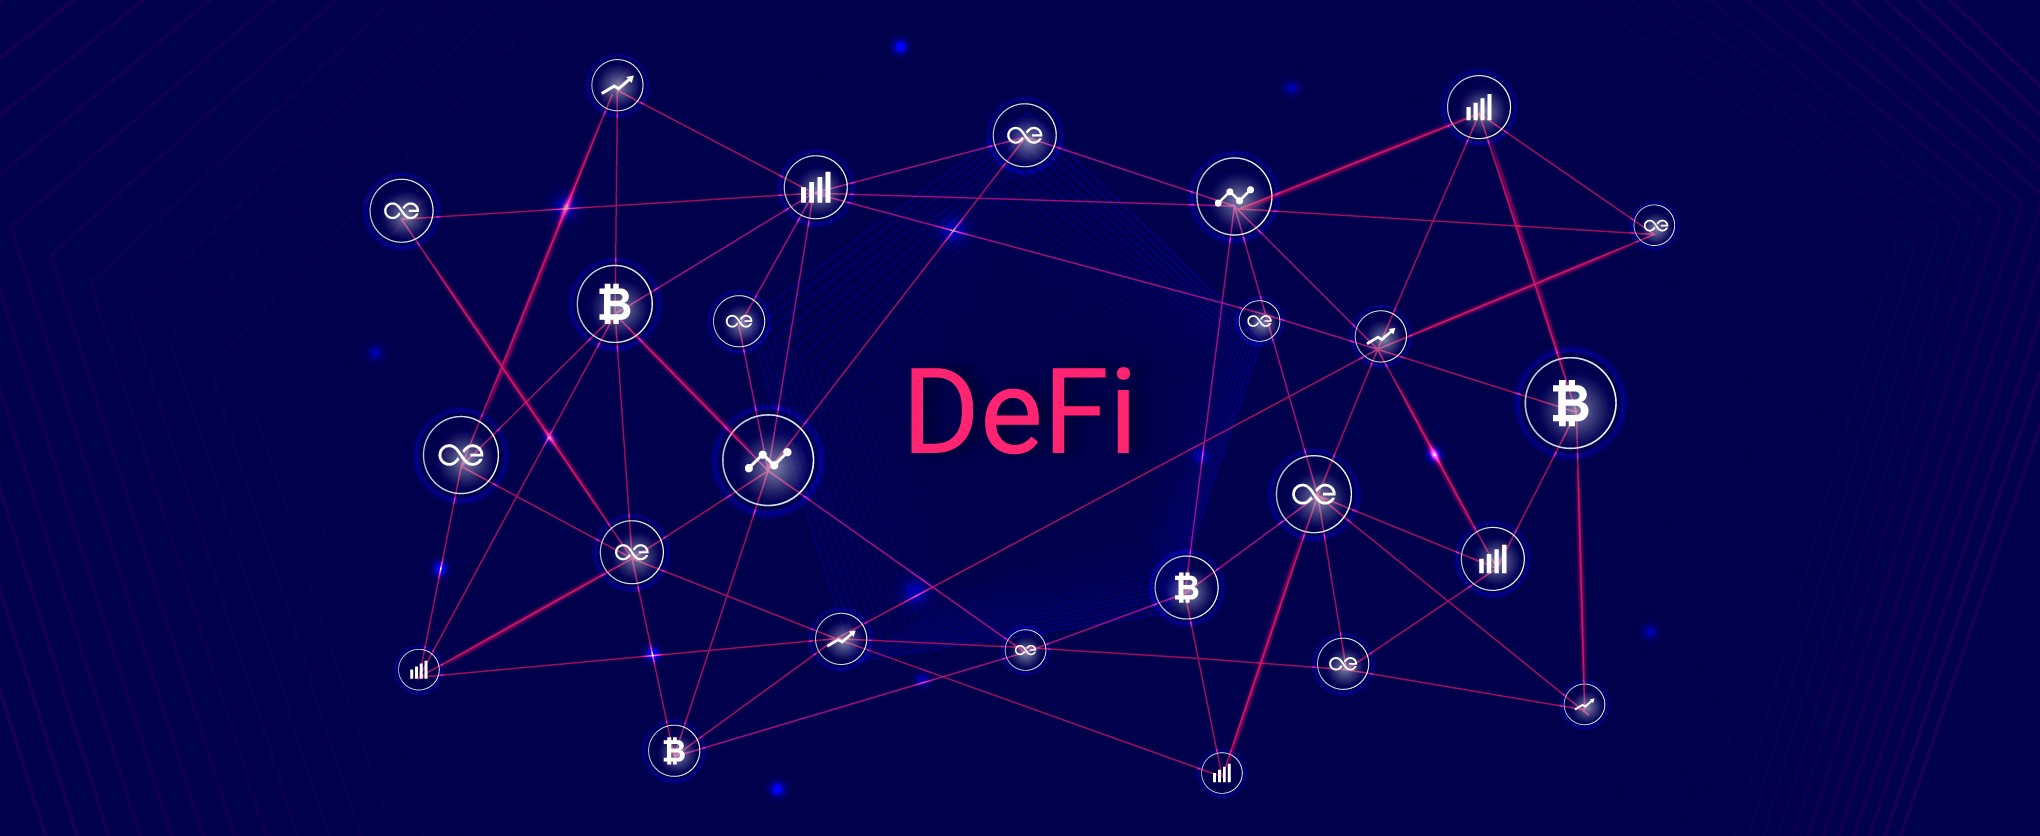 مفهوم DeFi در ارزش مشترک قفل شده است